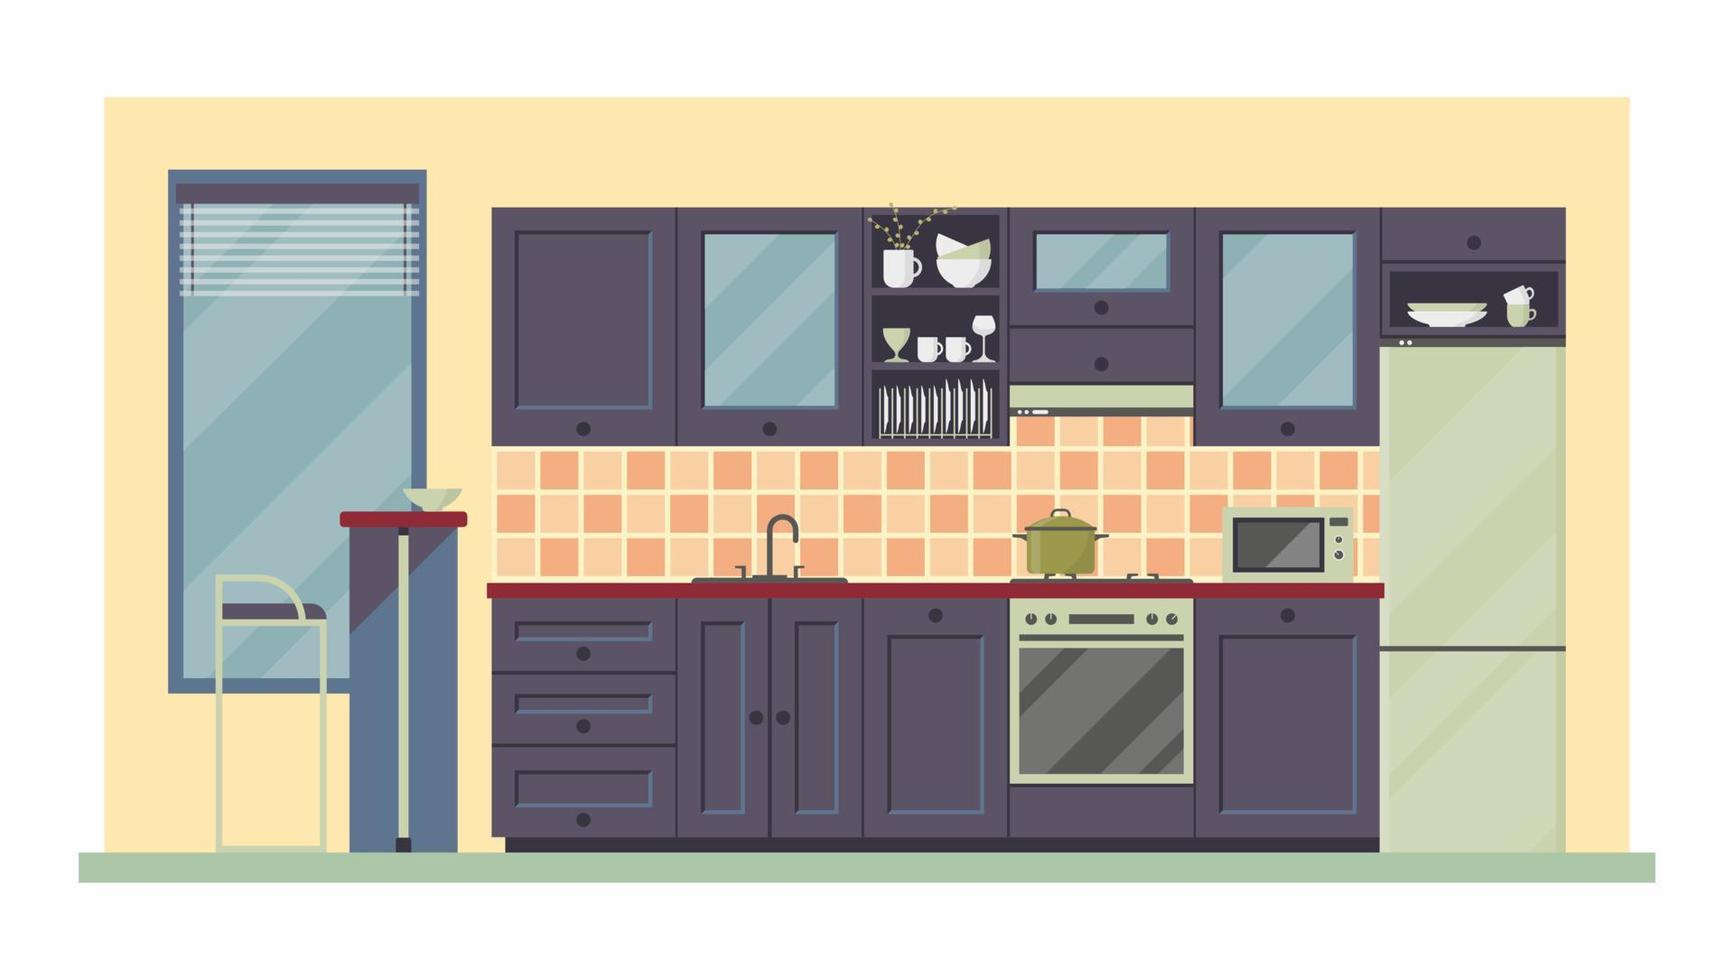 illustrazione piatta vettoriale, interni moderni della cucina. mobili, stoviglie e utensili. attrezzature per la preparazione dei cibi, elettrodomestici vettore